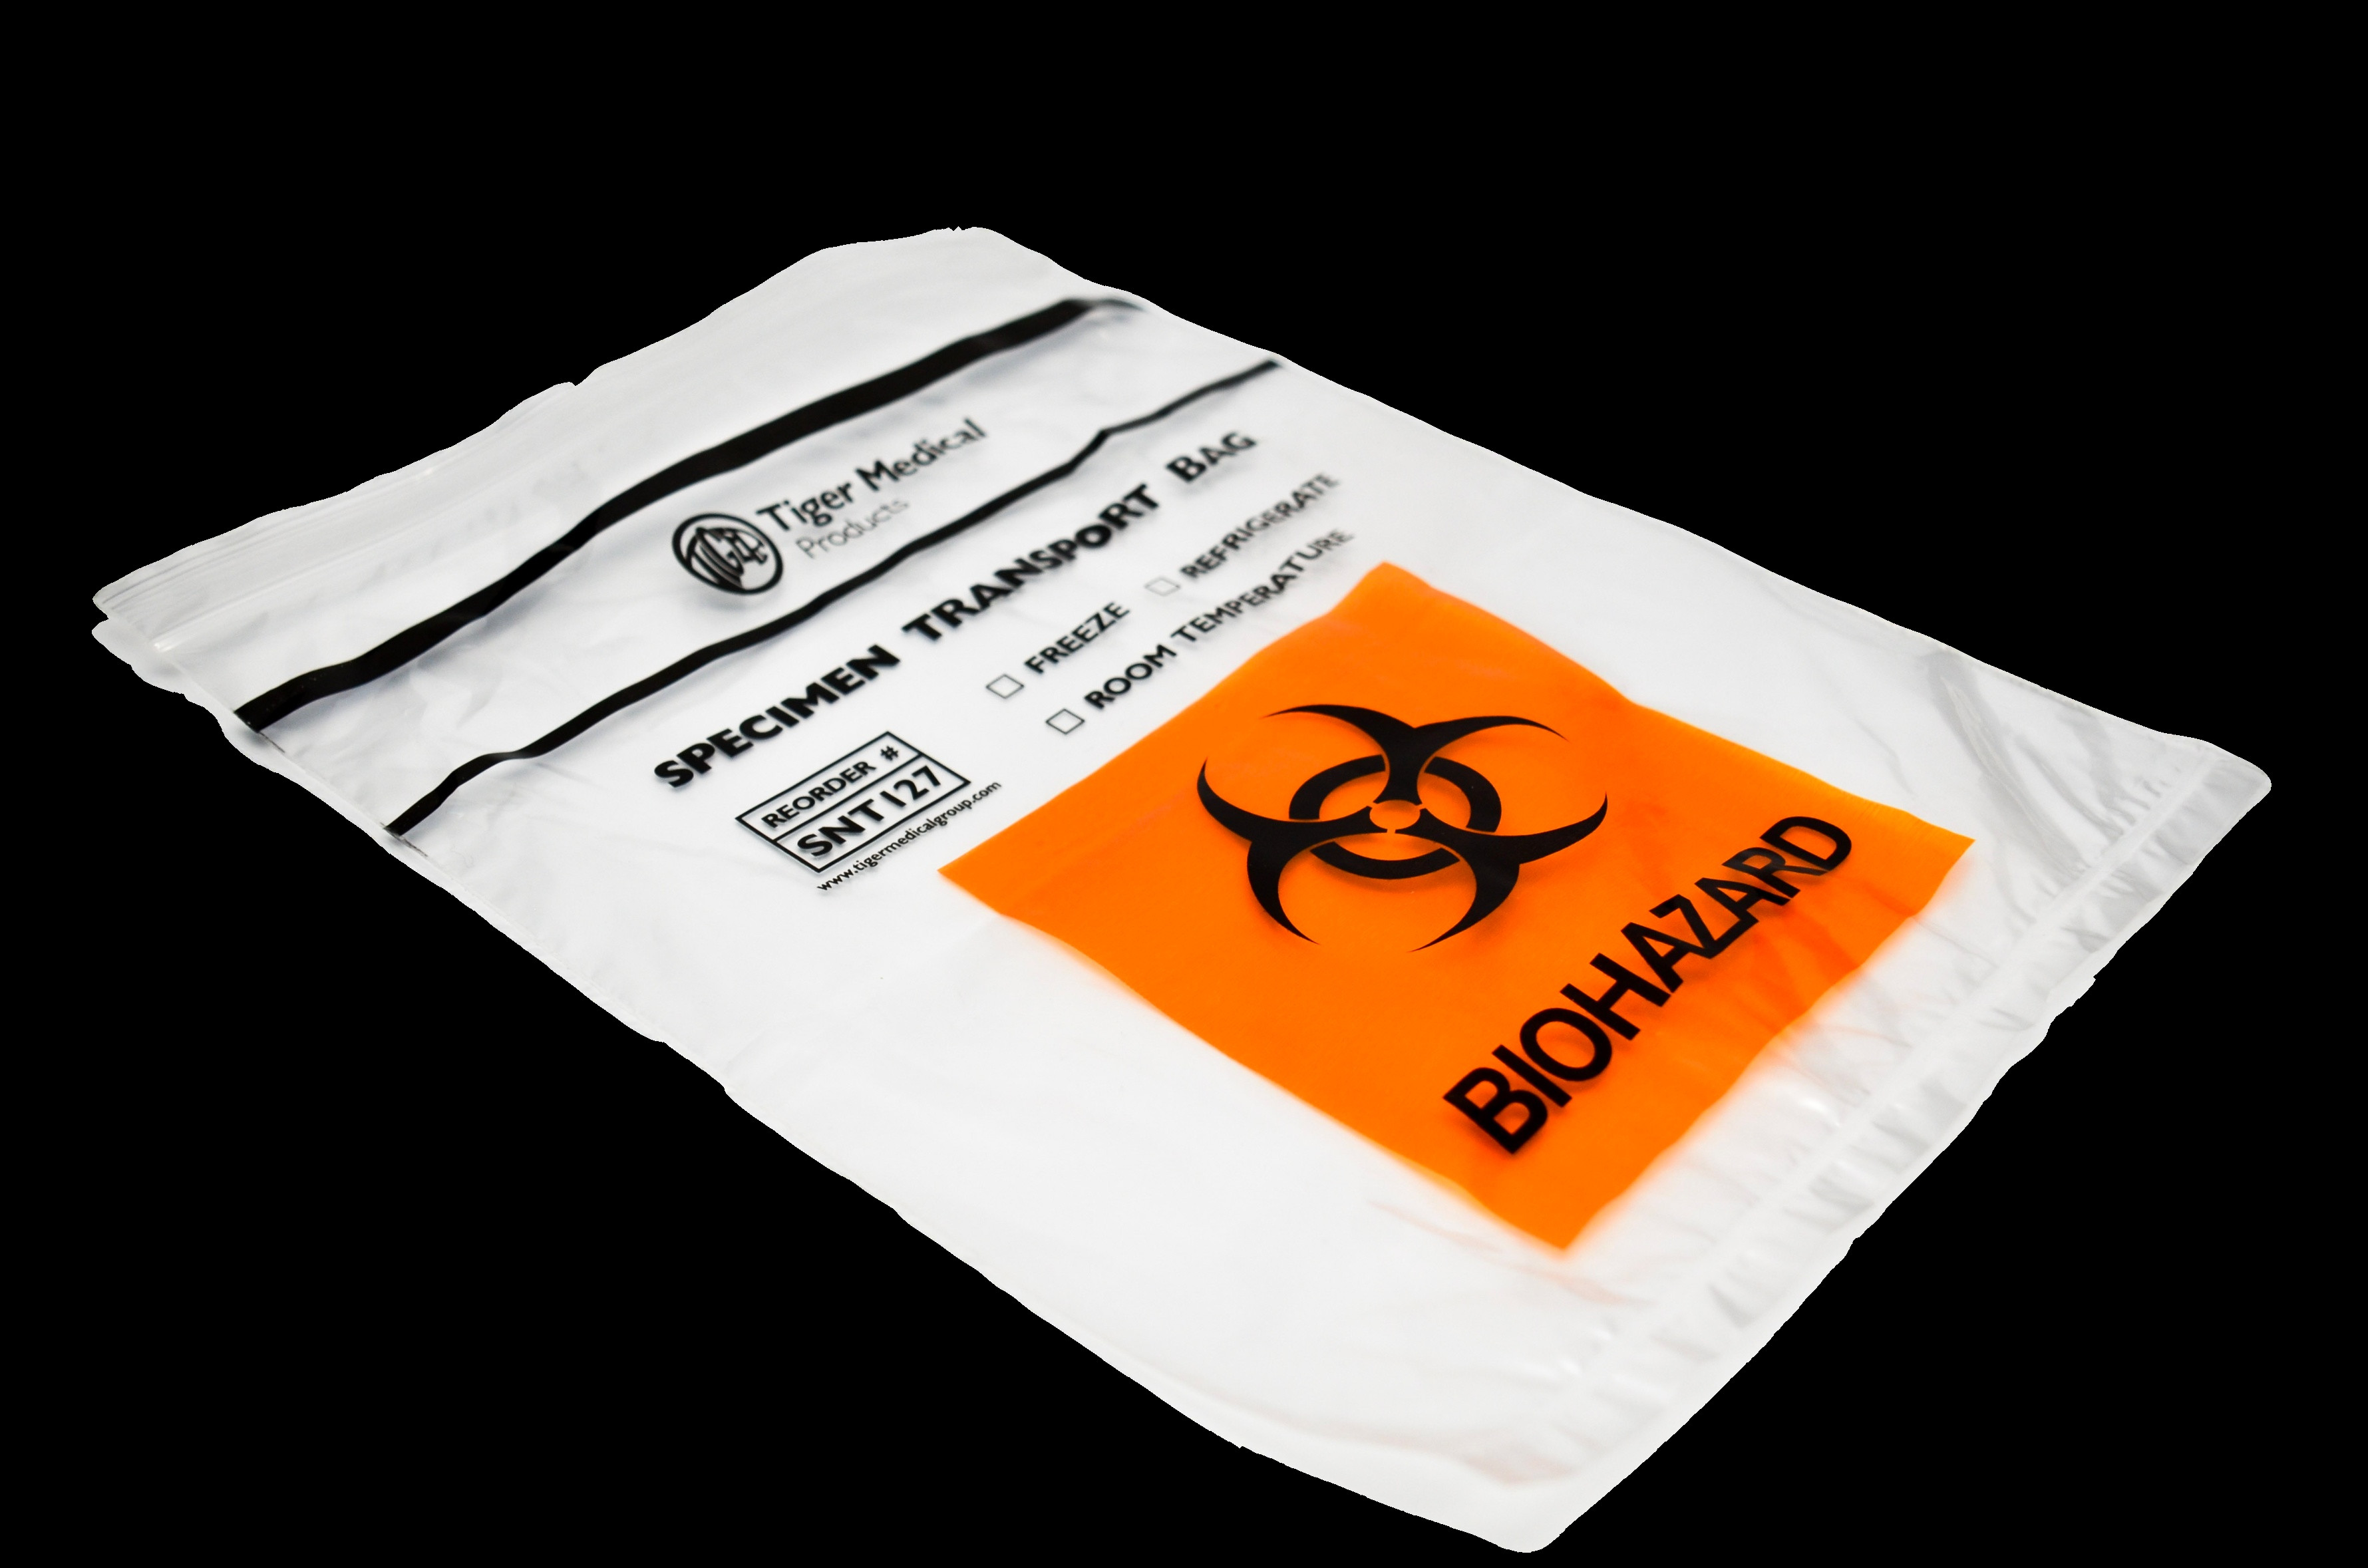 Custom Made Zipper Biohazard Specimen Transport Bags For Medical Test